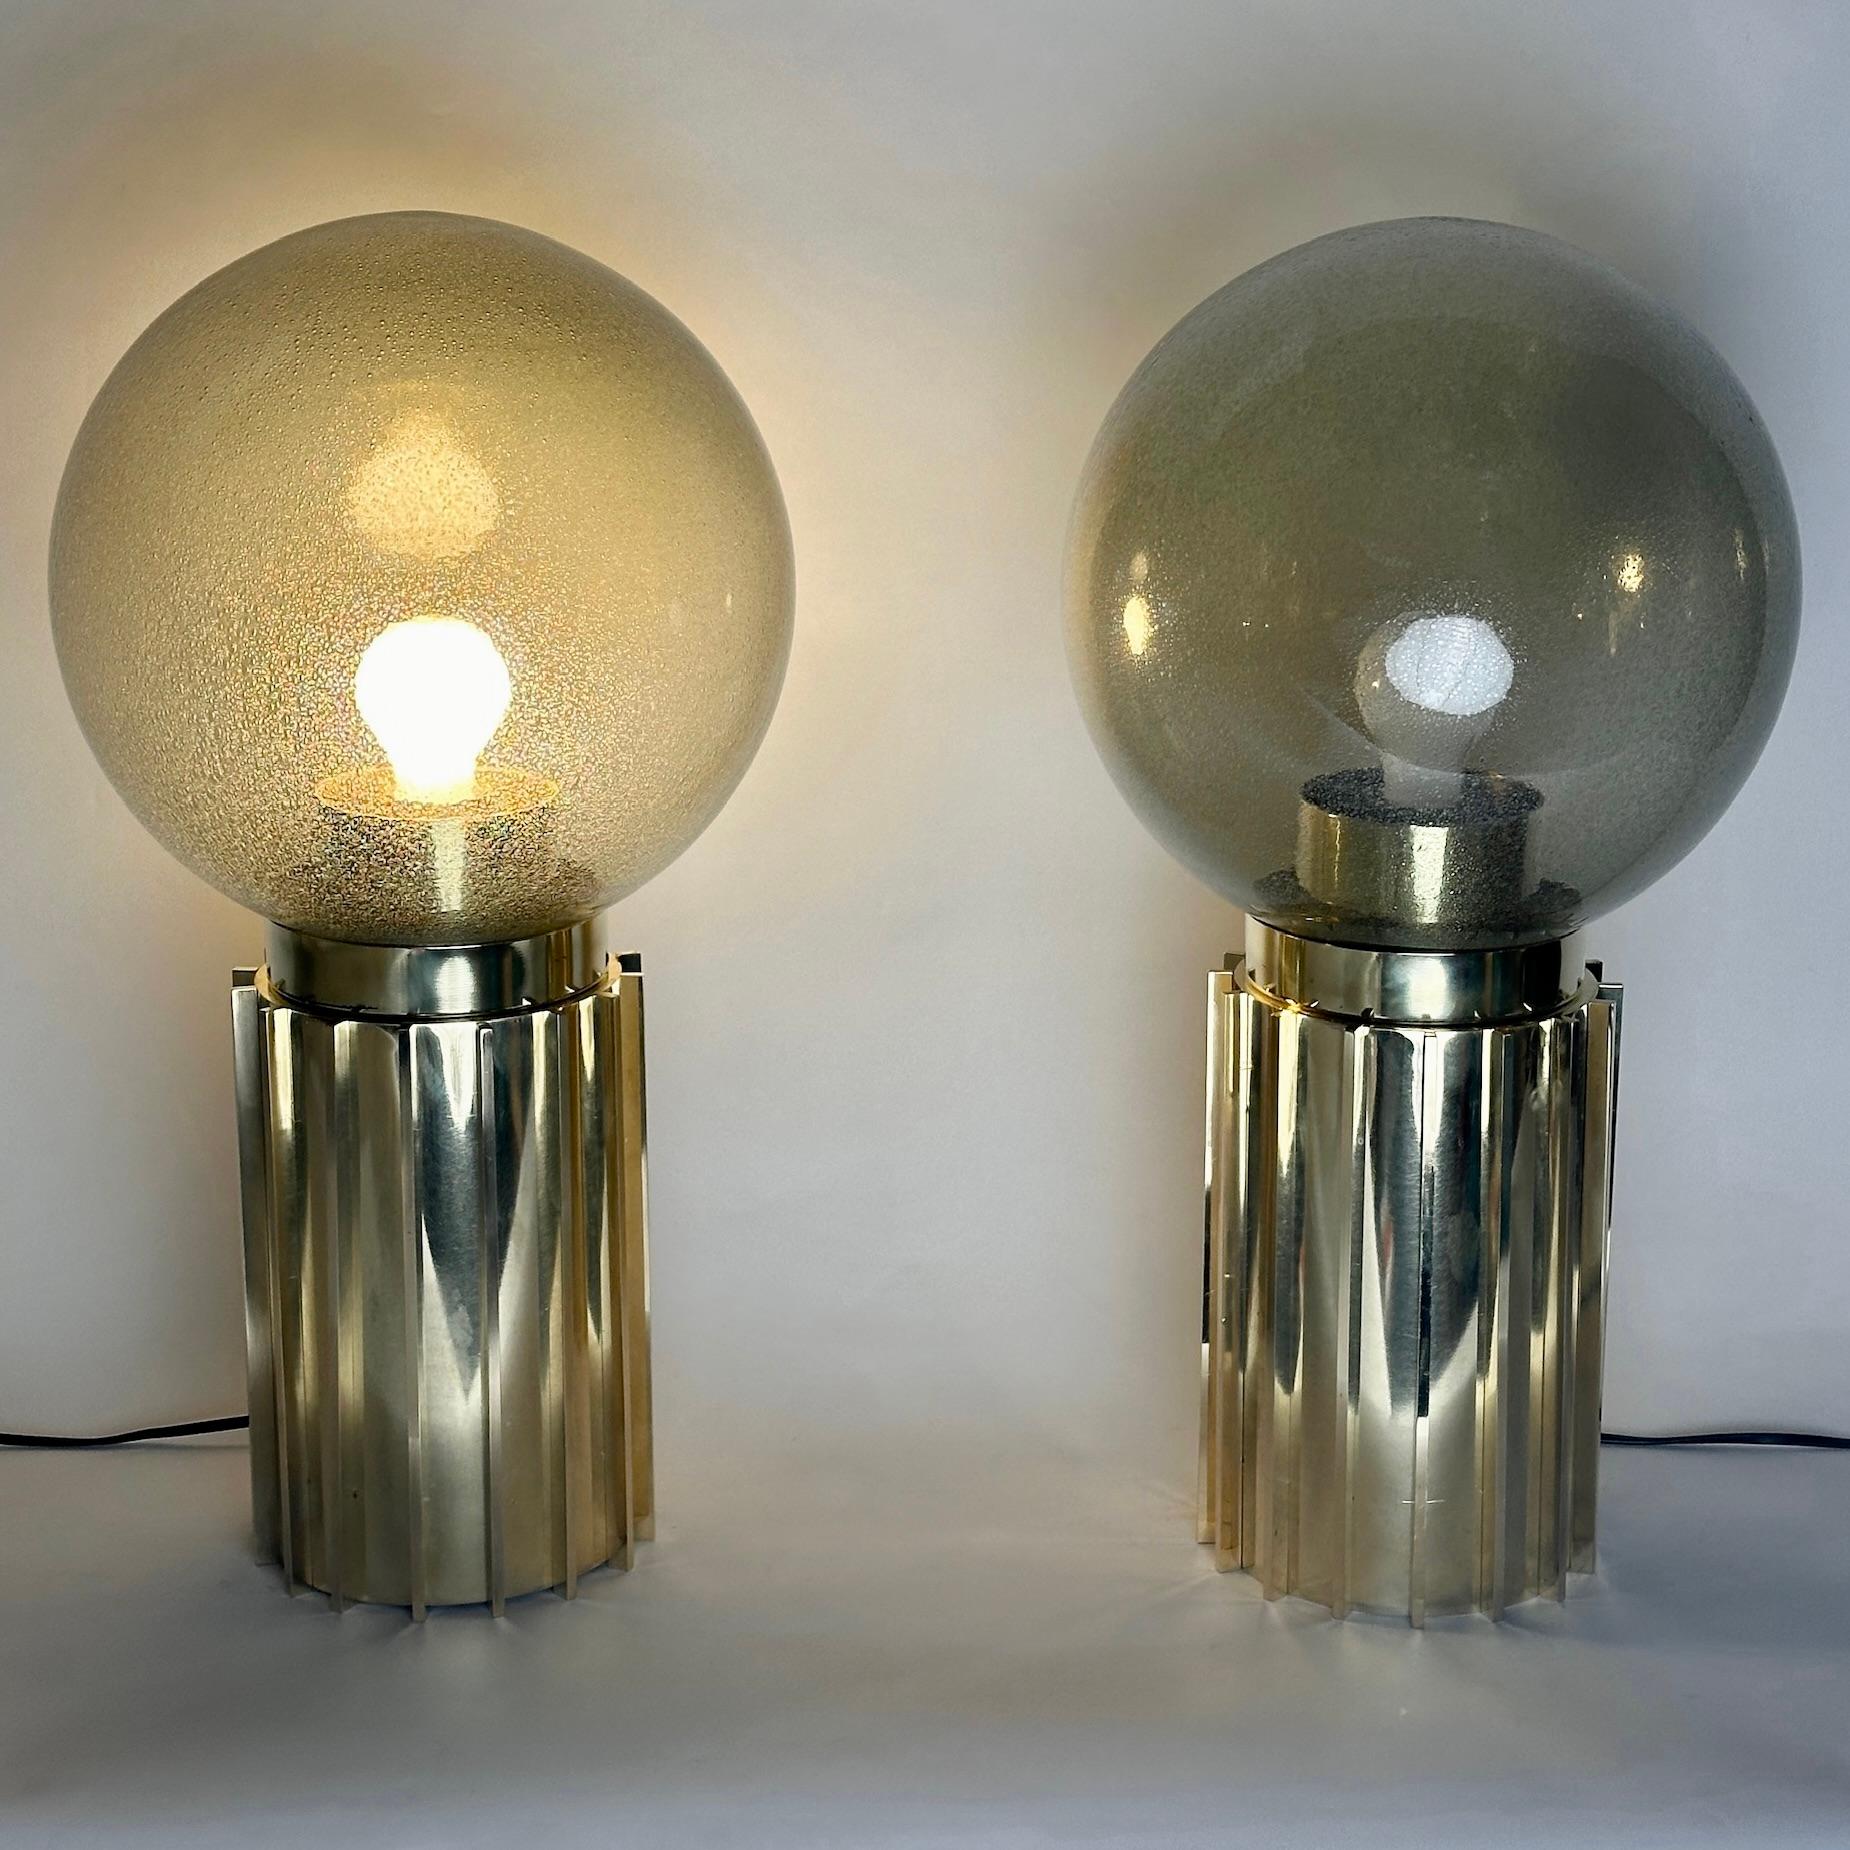 Dieses Paar moderner Tischlampen mit rauchgrauen Pulegoso Murano Kunstglaskugeln passt in fast jede Umgebung und eignet sich perfekt für den Nachttisch oder jeden anderen Raum.
Die Messingbasis, die einer dorischen Säule ähnelt, und das rauchgraue